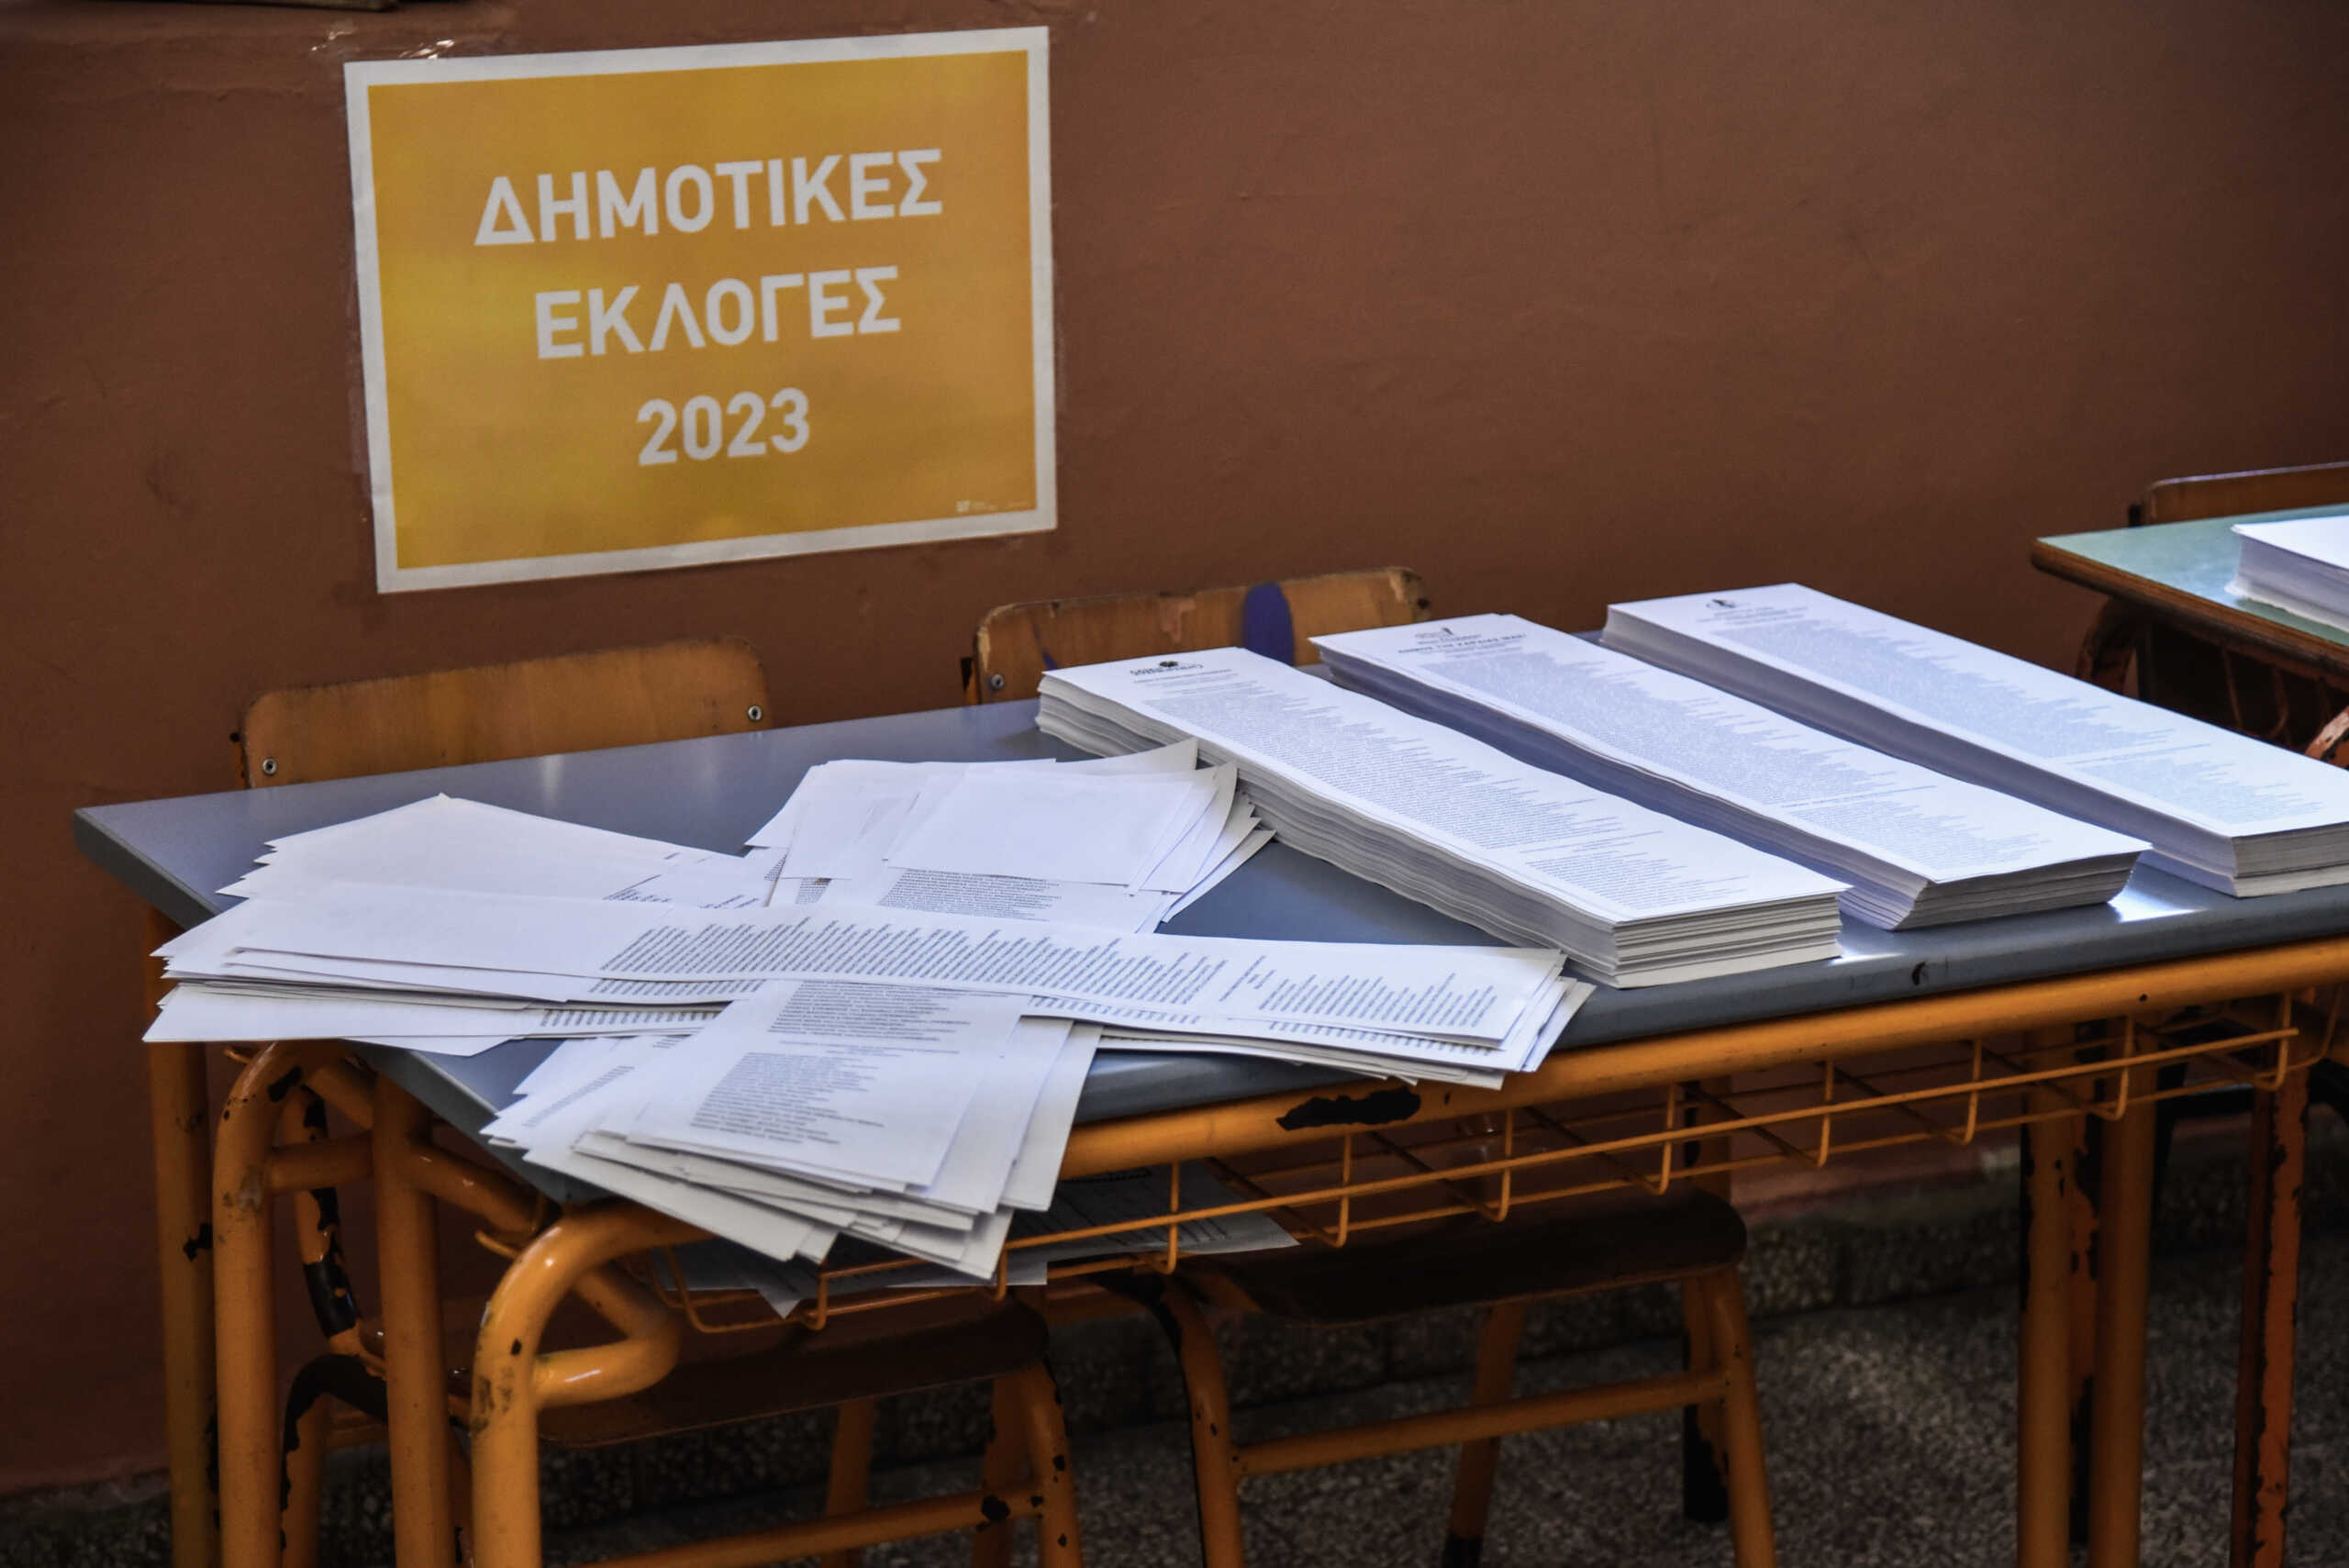 Δημοτικές εκλογές 2023: Κάλπες σε 28 δήμους της Αττικής – Ποιοι συμμετέχουν στην κούρσα